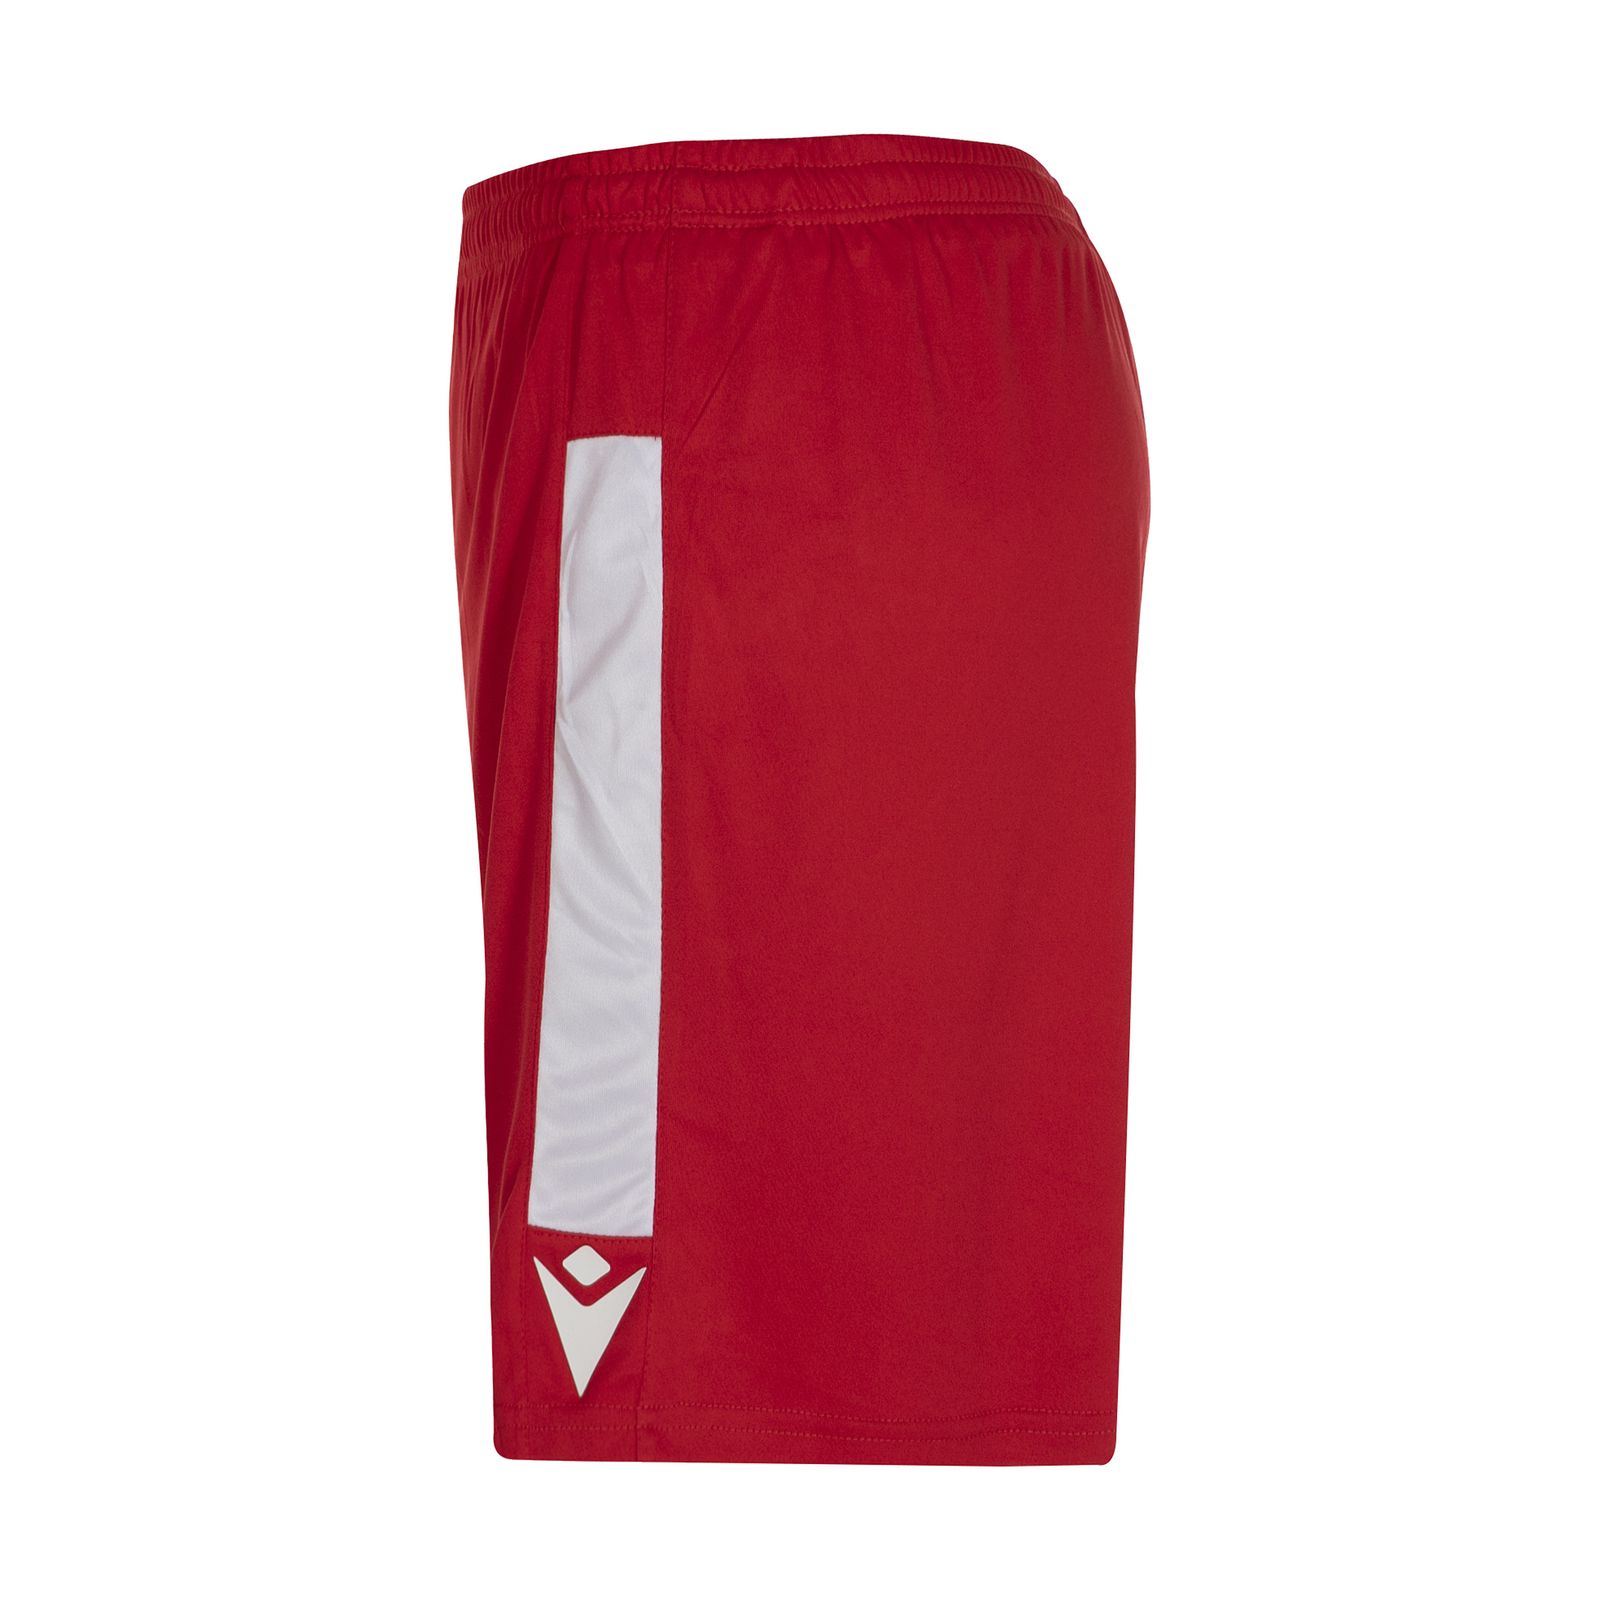 ست تی شرت و شلوارک ورزشی مردانه مکرون مدل کاناپوس رنگ قرمز -  - 4